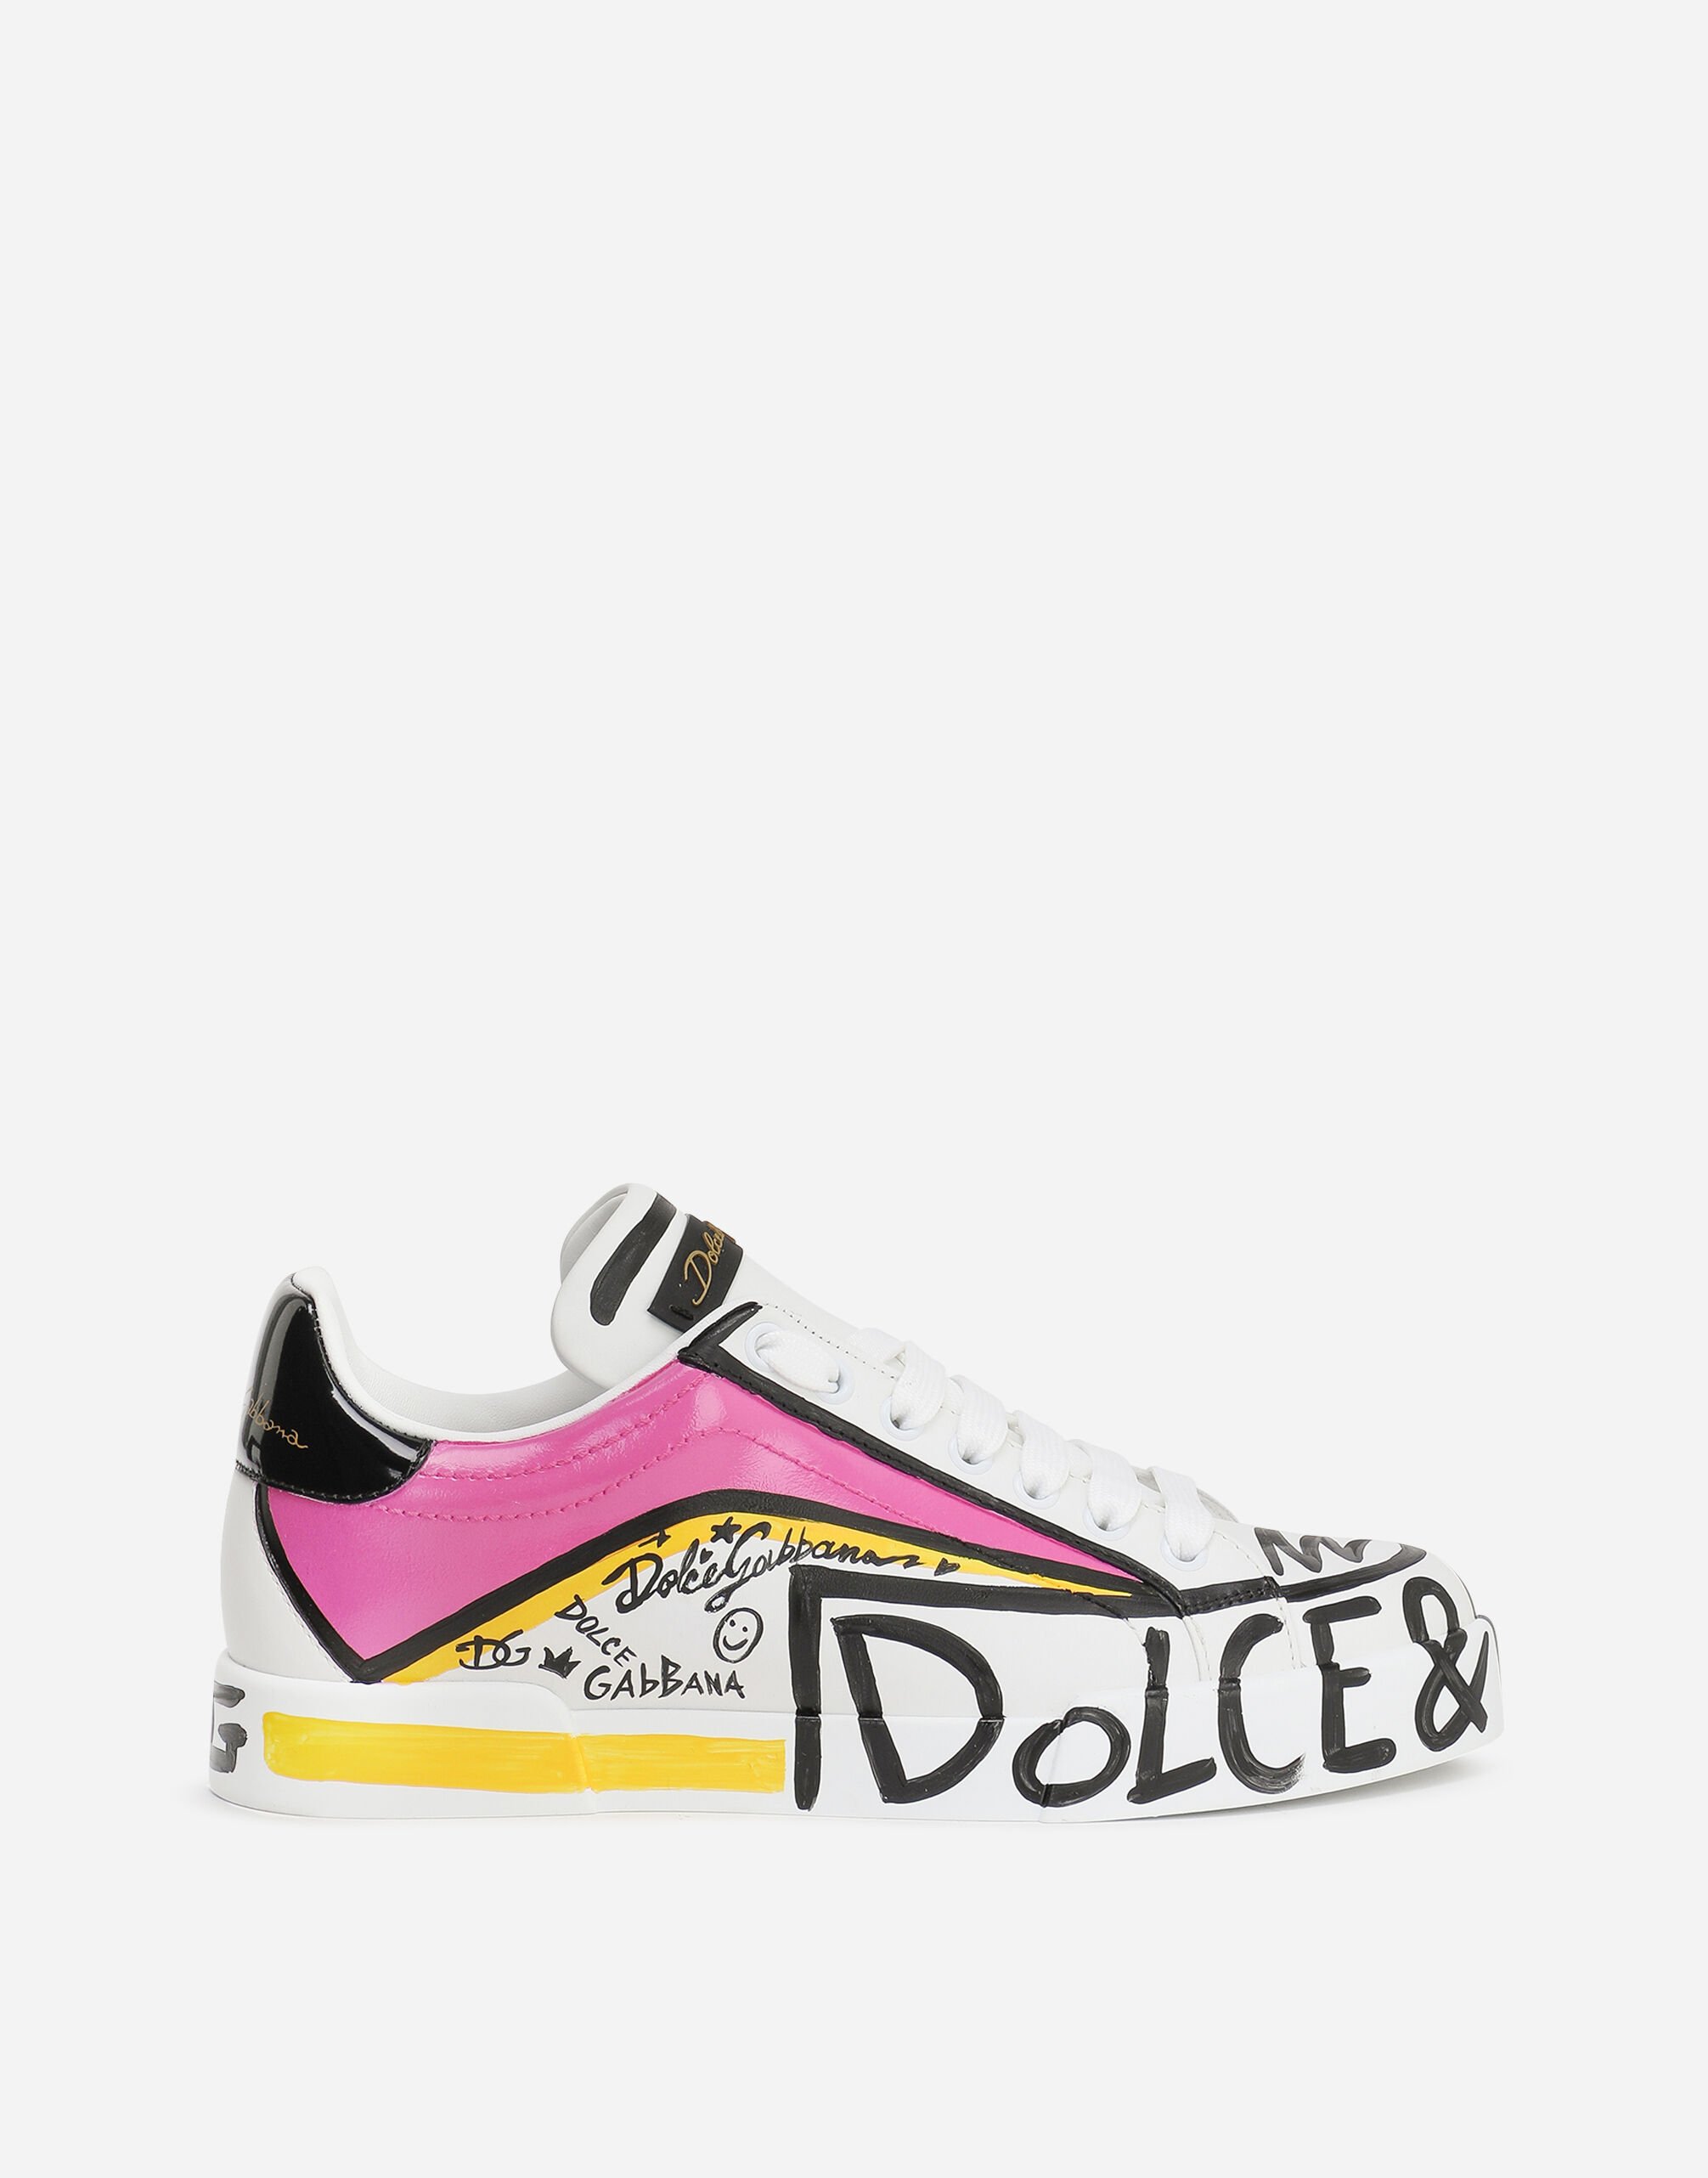 Dolce & Gabbana Sneaker Portofino Limited Edition Multicolor CK1563B7056